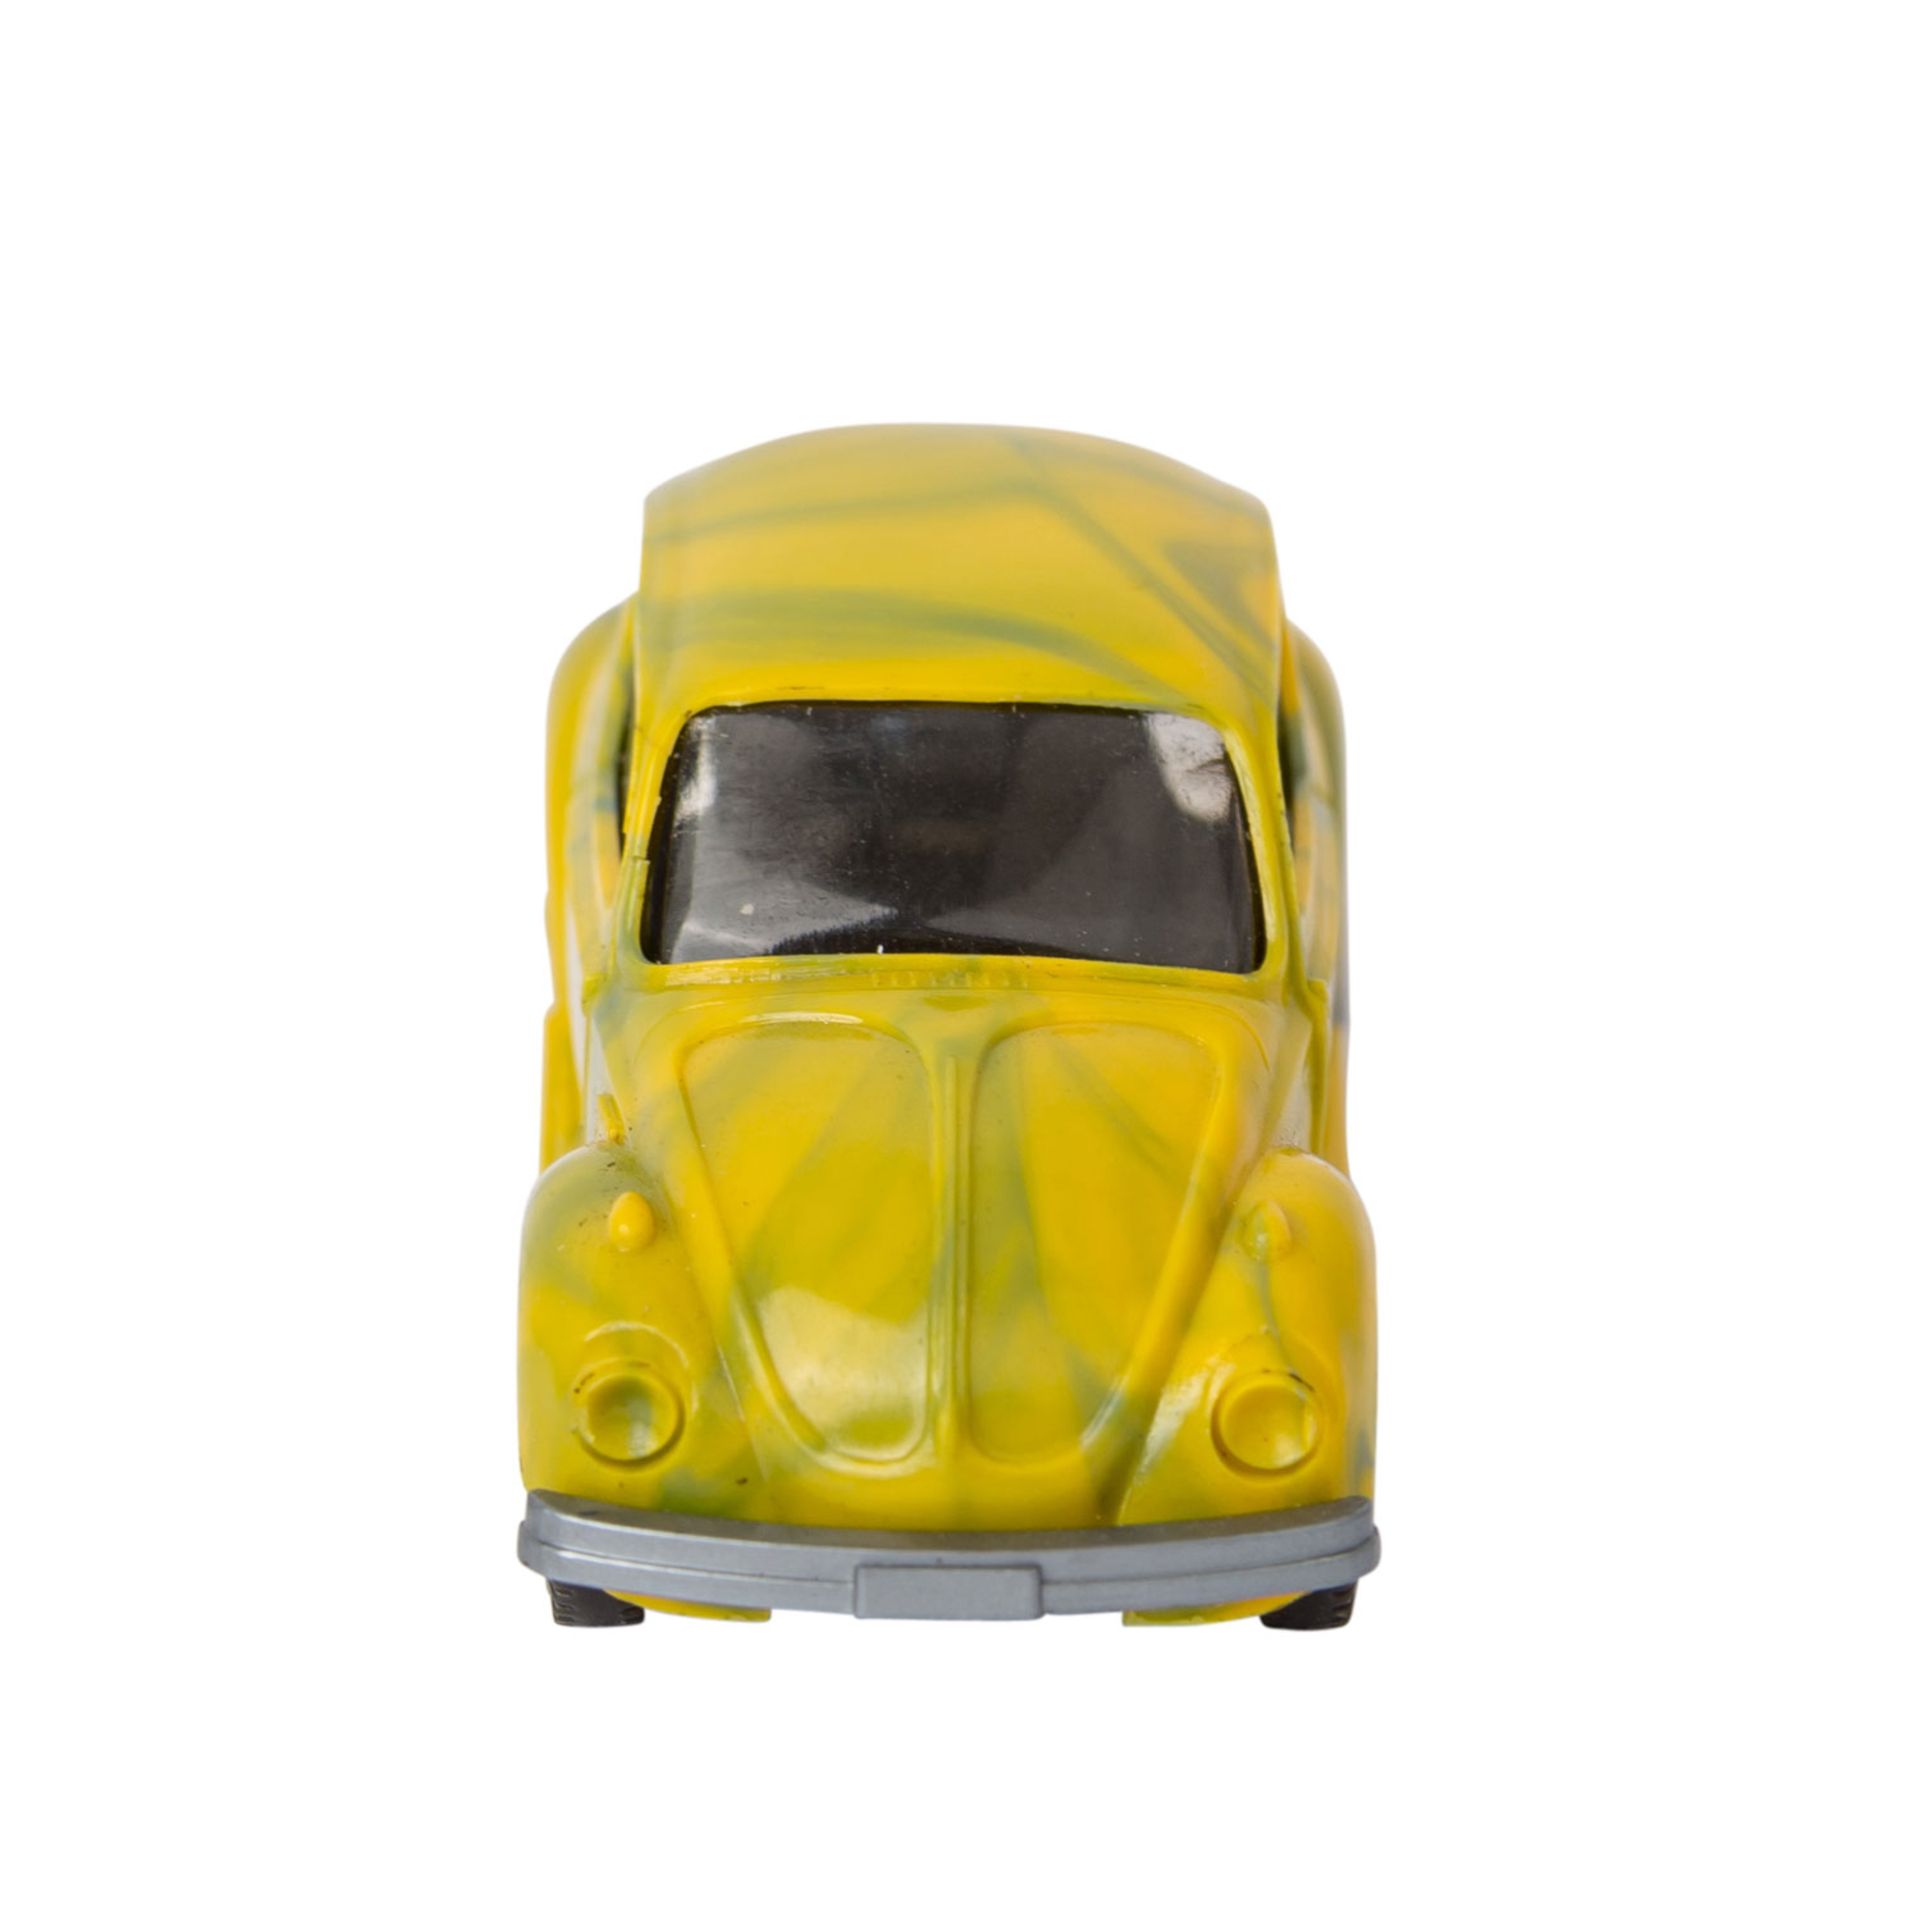 WIKING VW Käfer Vorserie, um 1972,misch-bunt (gelb-grün), glatte Stoßstangen, gerad - Bild 5 aus 6